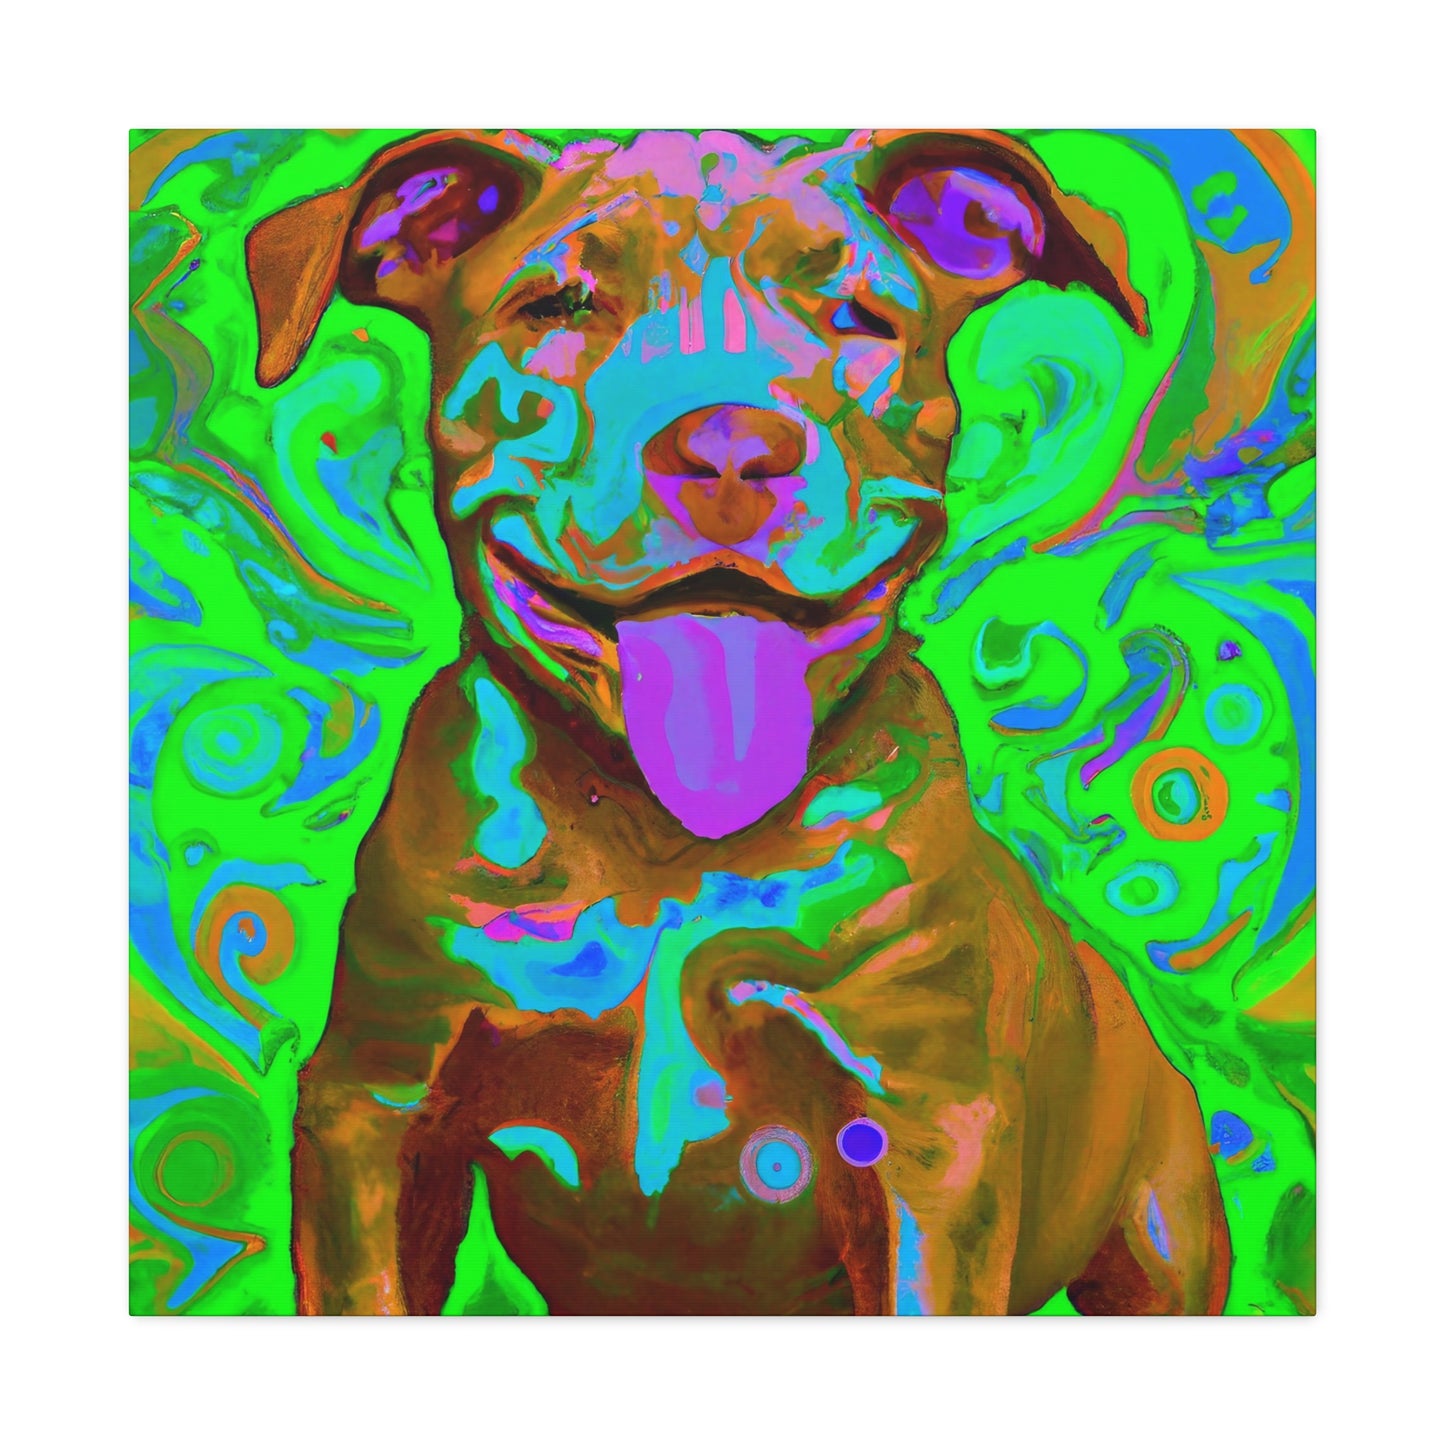 Sirano Devoreaux - Pitbull Puppy - Canvas